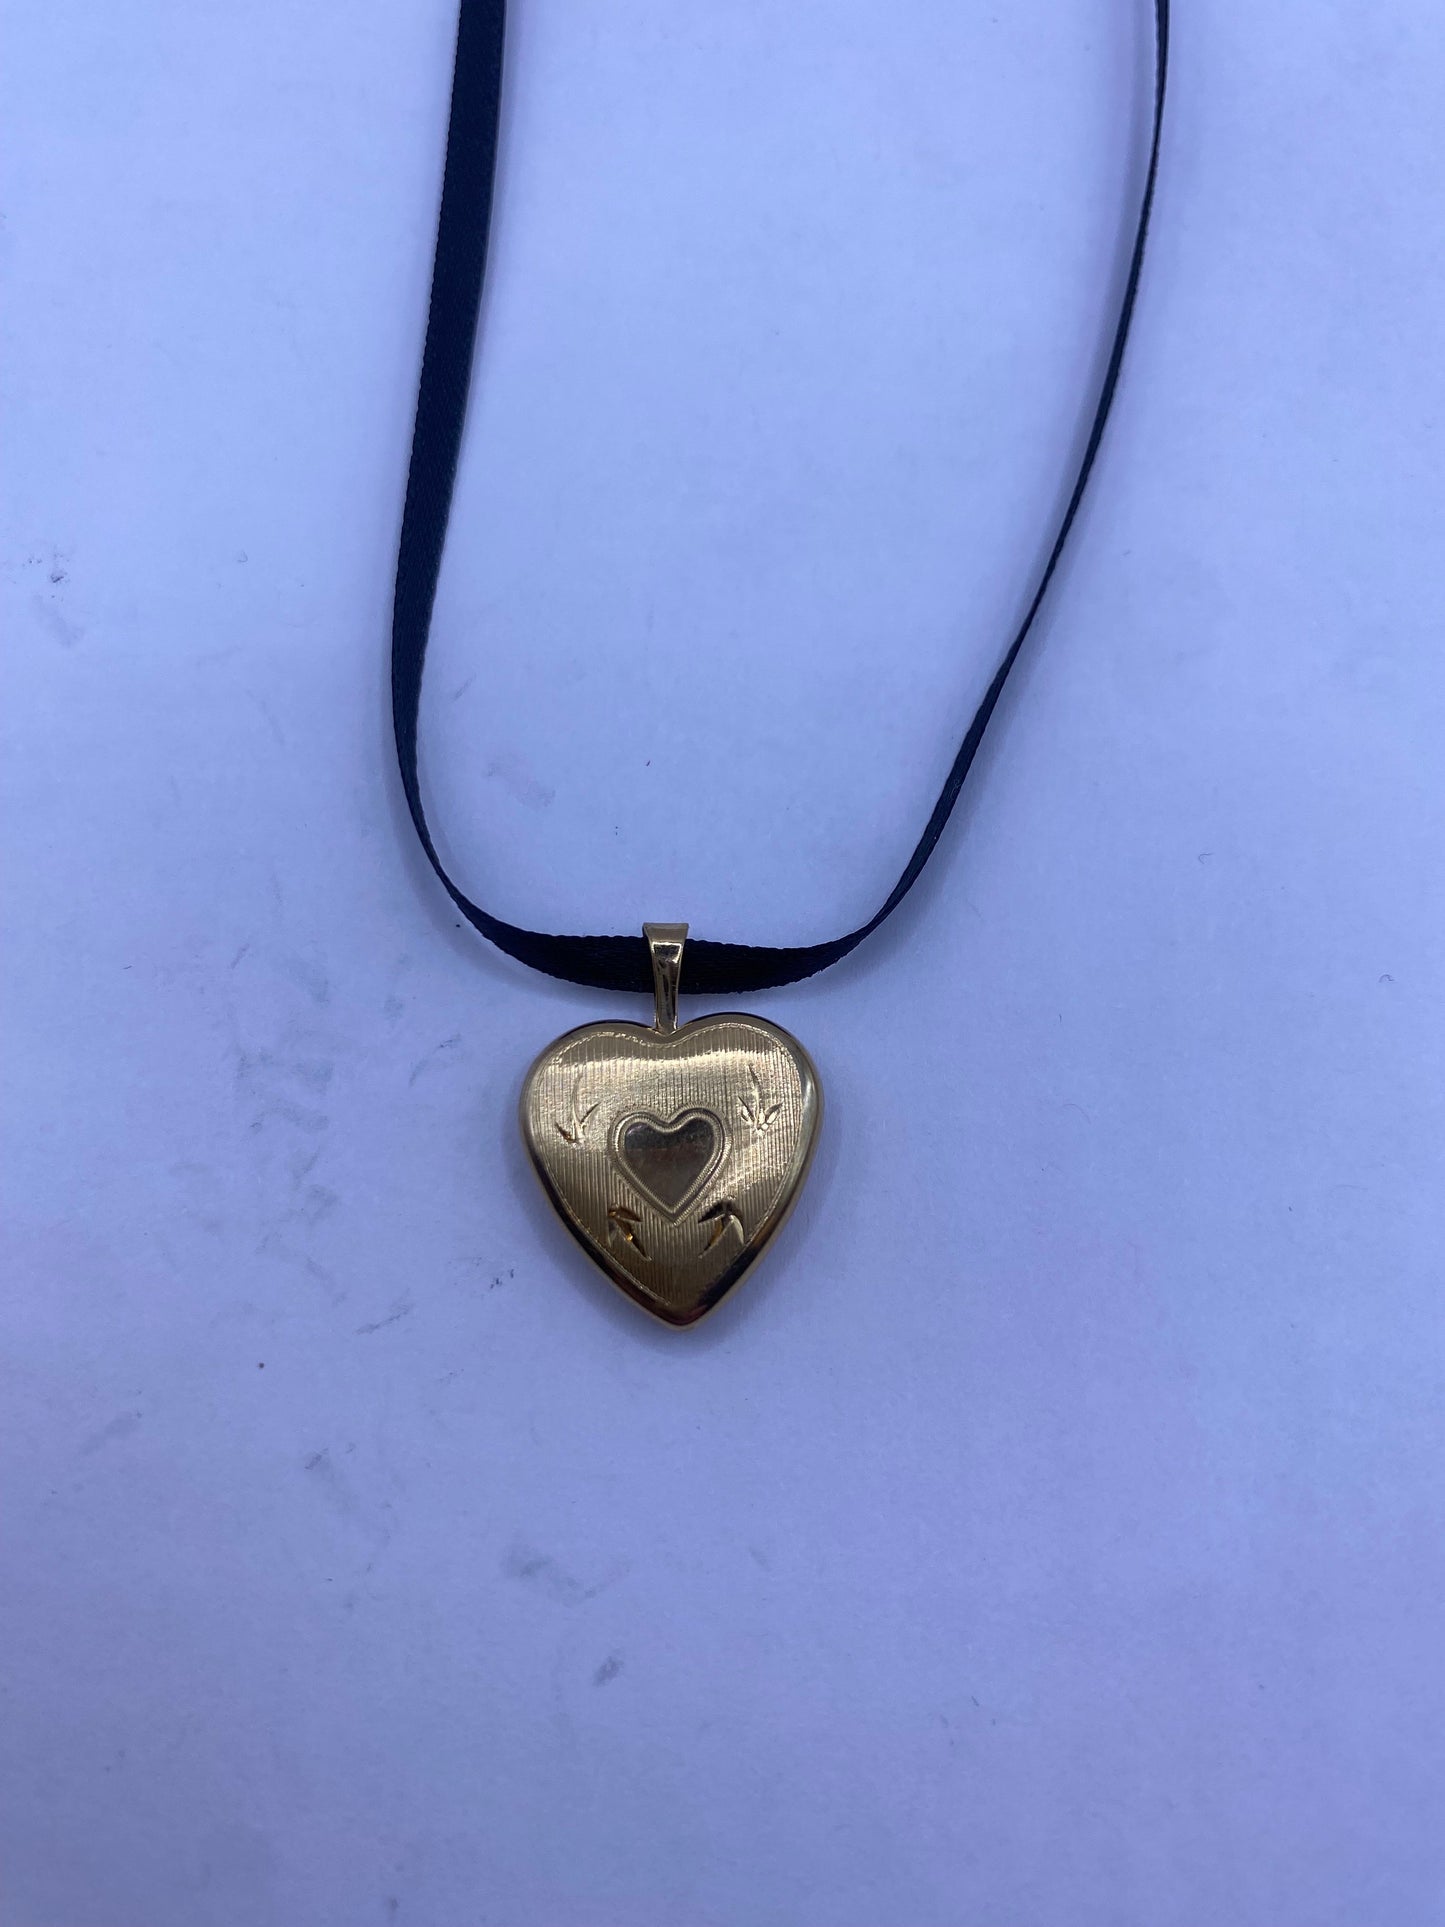 Vintage Heart Flower Locket Choker Gold Filled Necklace